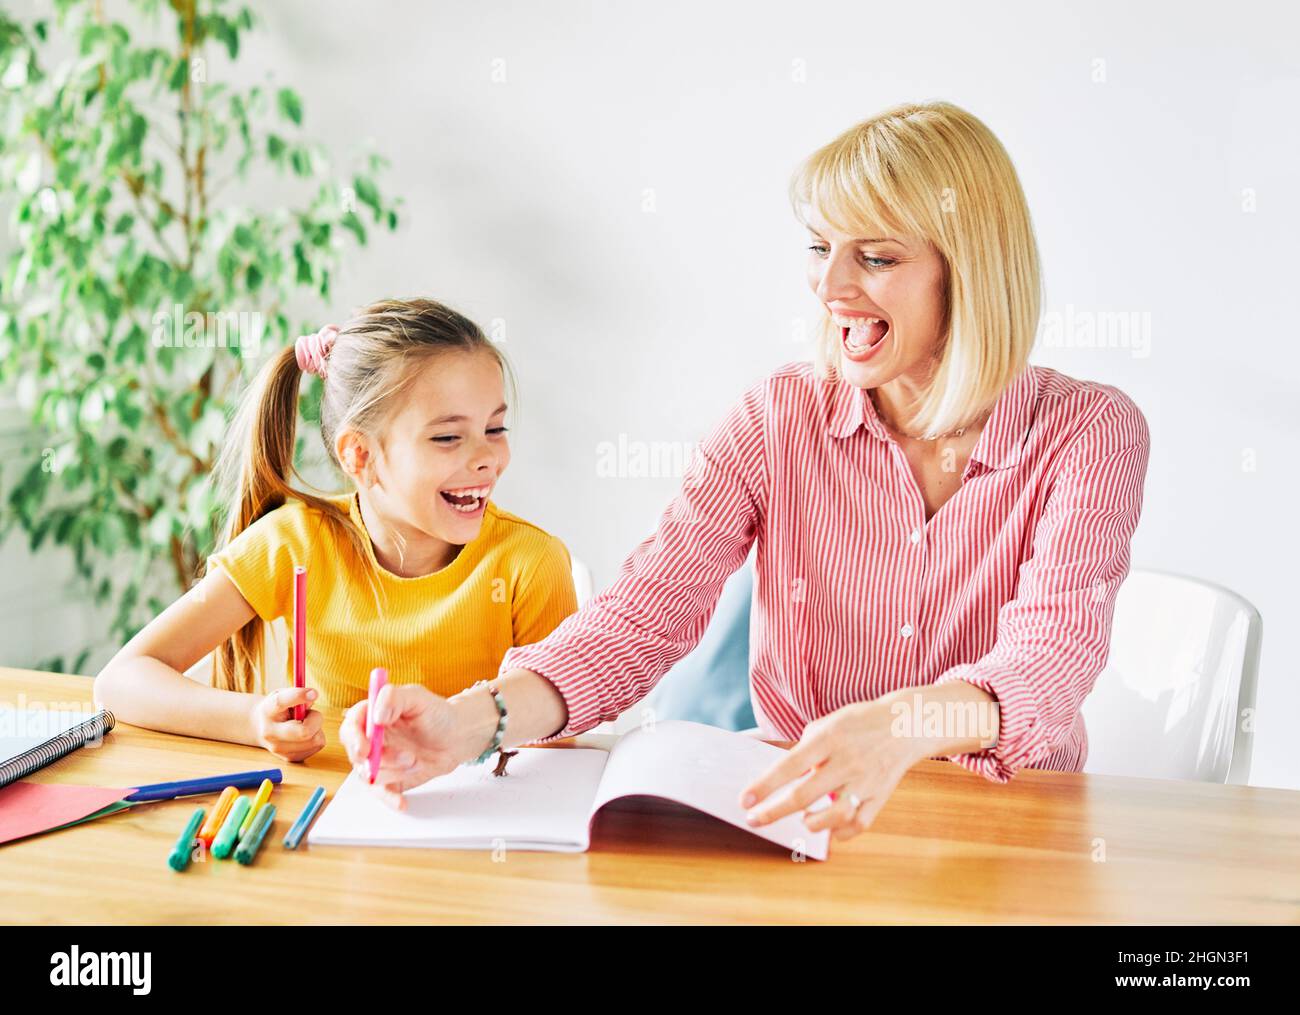 Hausaufgaben Unterricht Bildung Mutter Kinder Tochter Familie Kindheit Kind Lehrer Klassenzimmer Schule Stockfoto